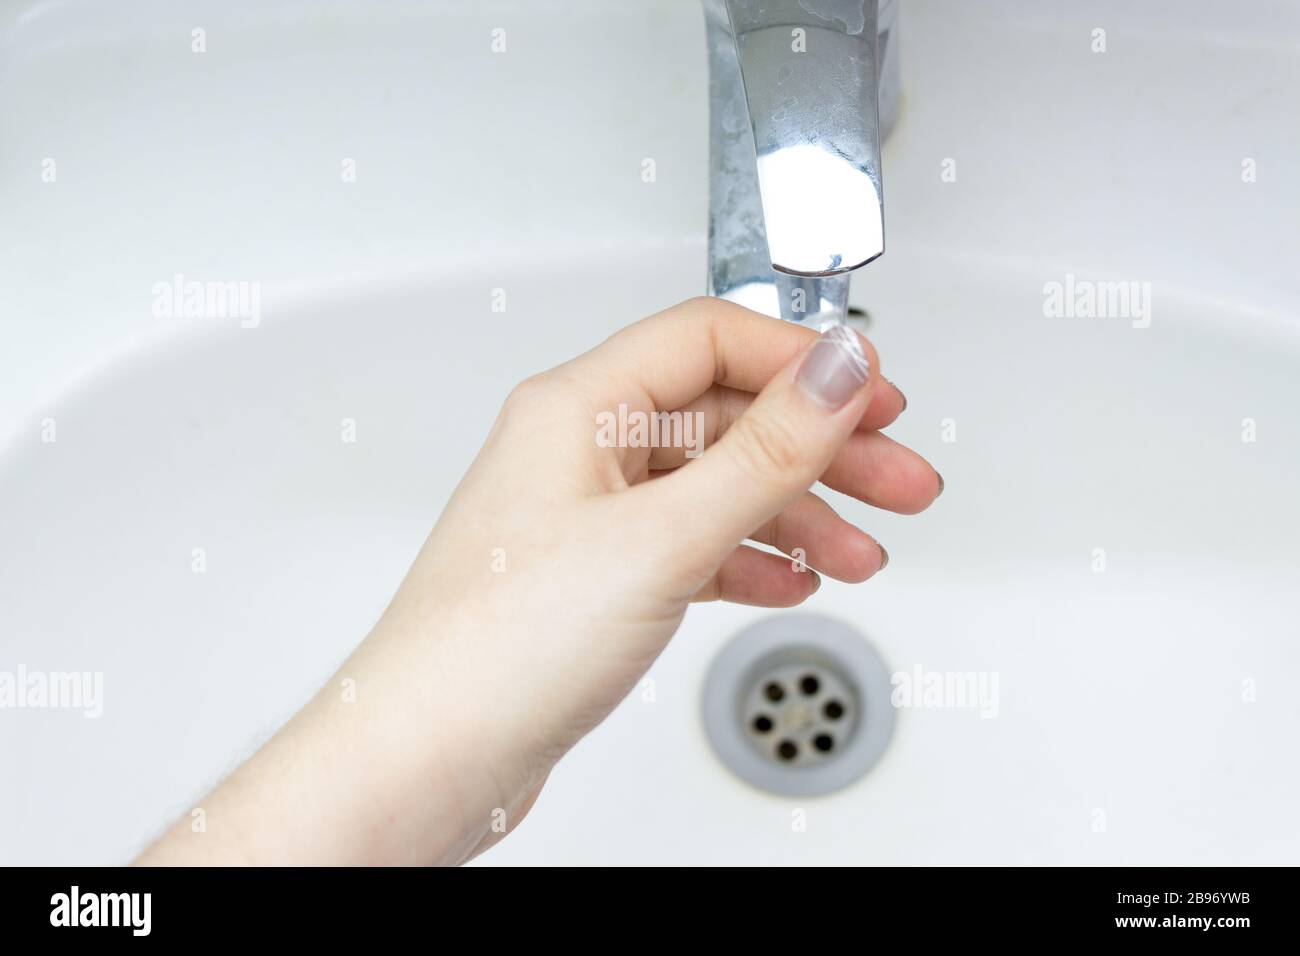 Corona virus Travel prevenzione uomo mostrando igiene delle mani lavando le mani con sapone in acqua calda per coronavirus germi diffusione protezione. Foto Stock